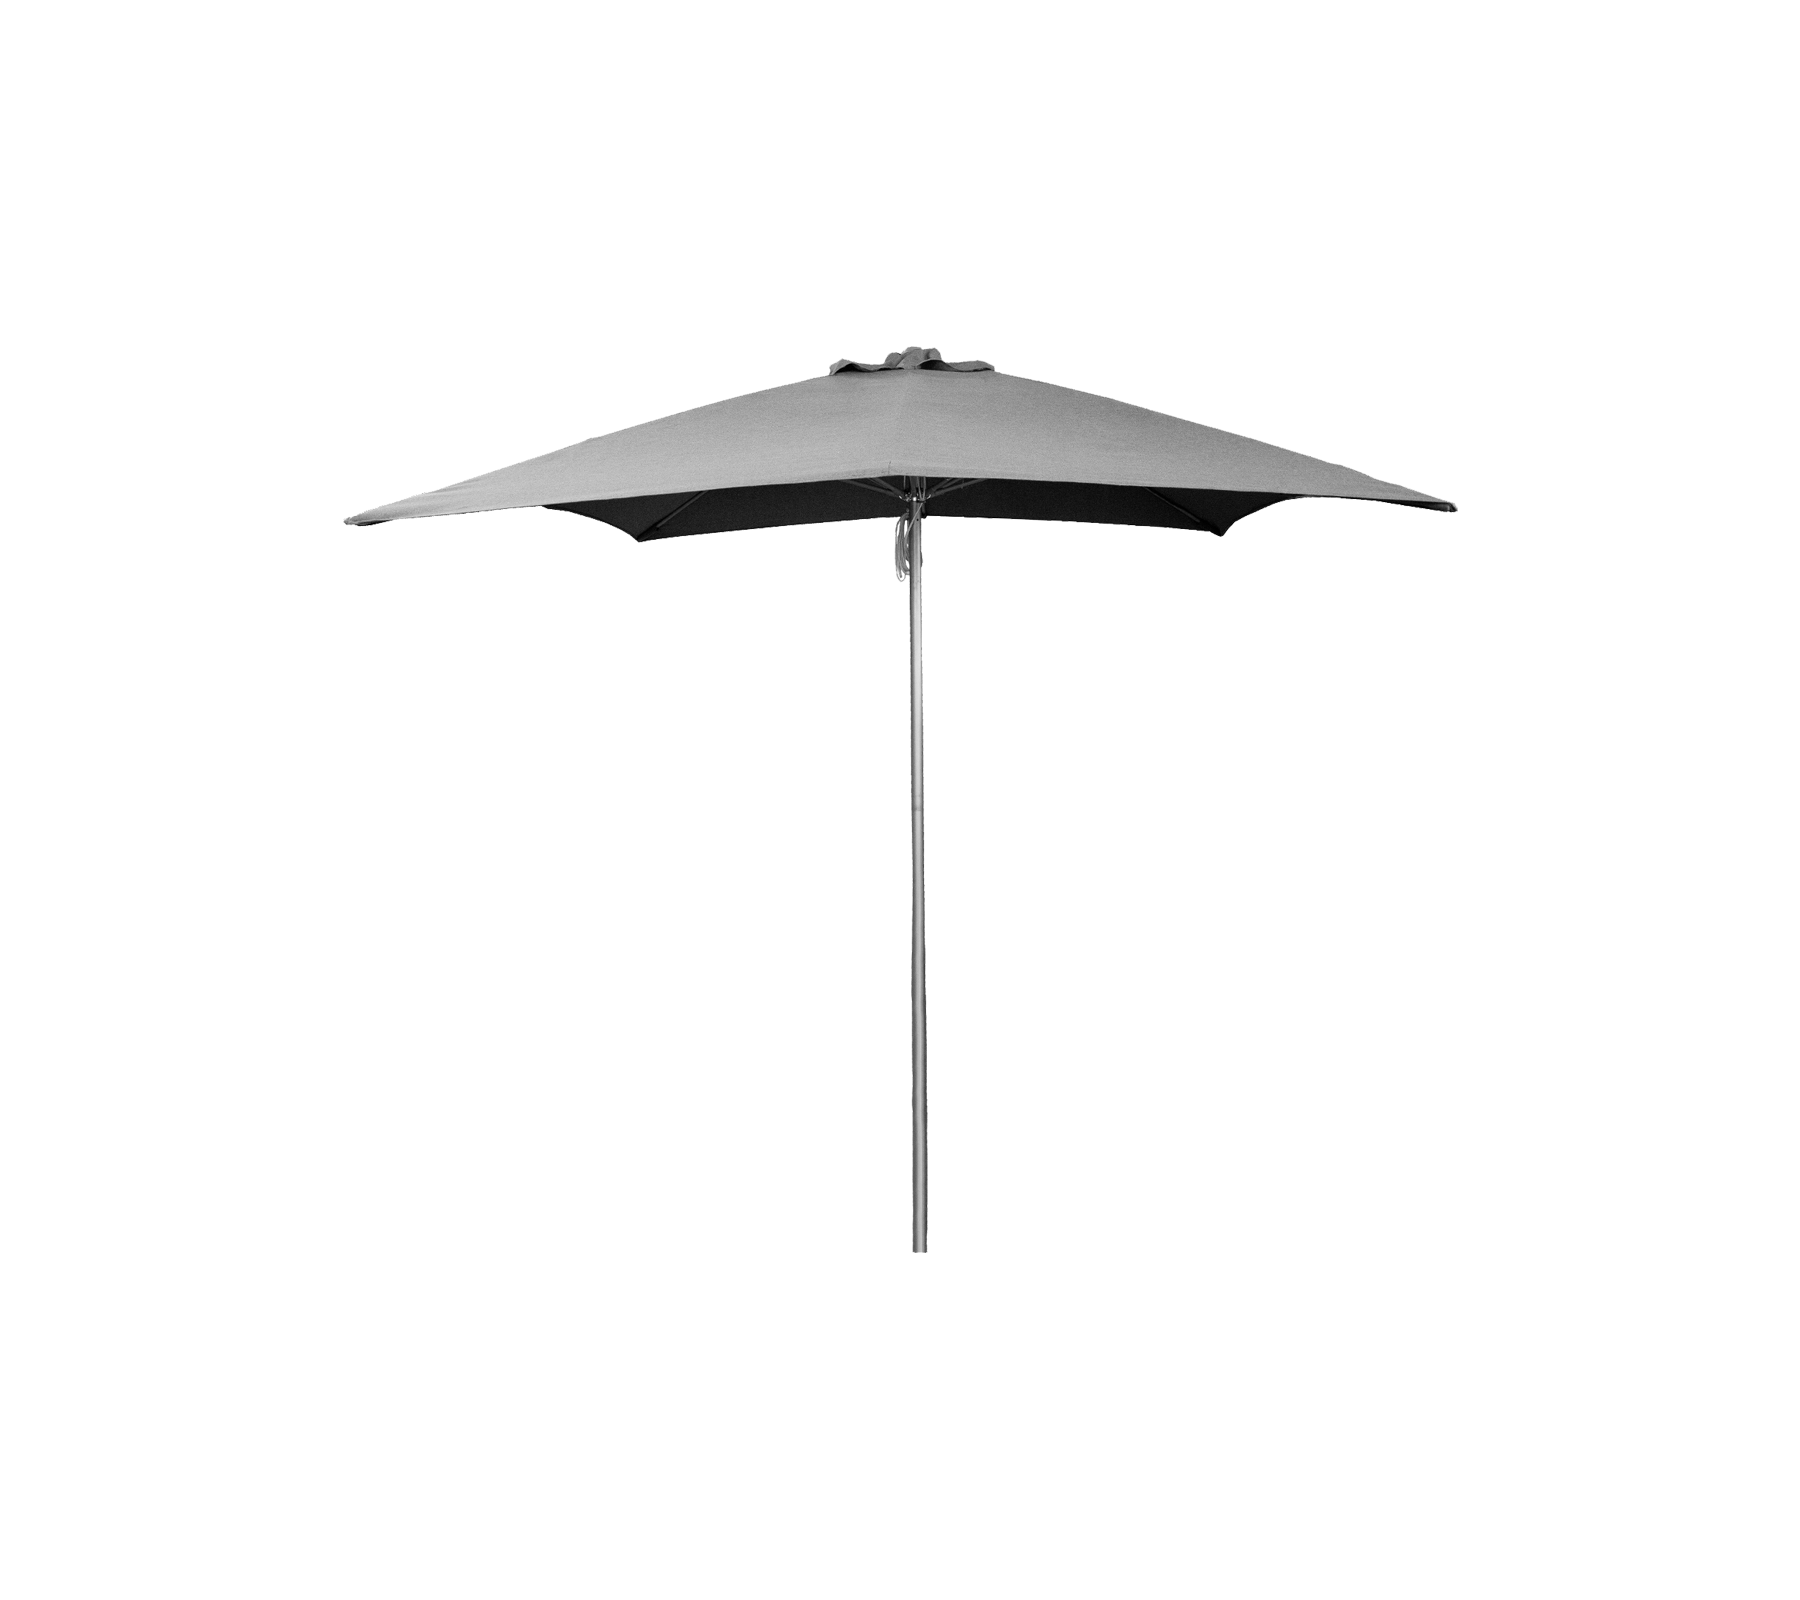 Shadow parasol m/snoretræk, 3x3 m